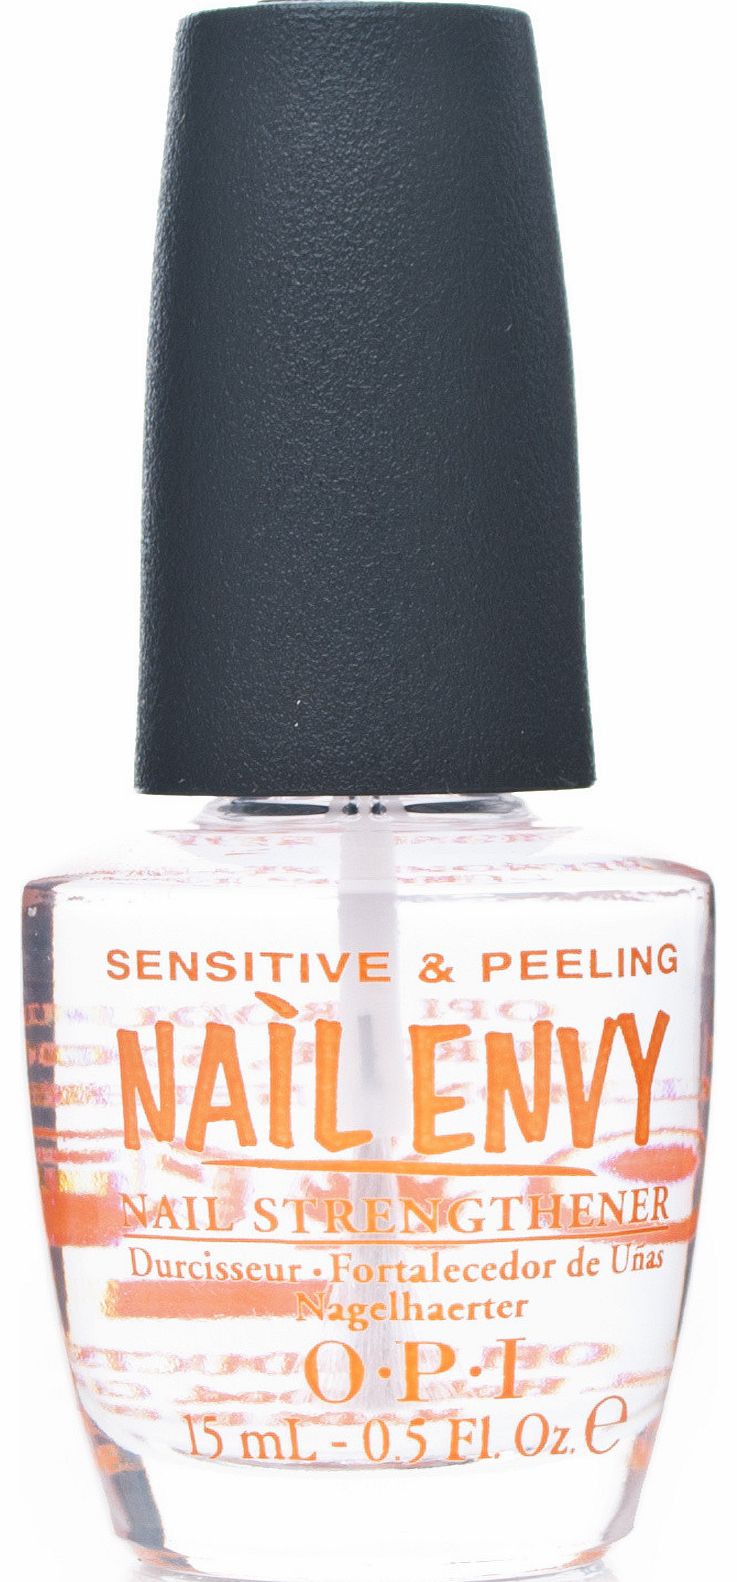 OPI Sensitive & Peeling Nail Envy